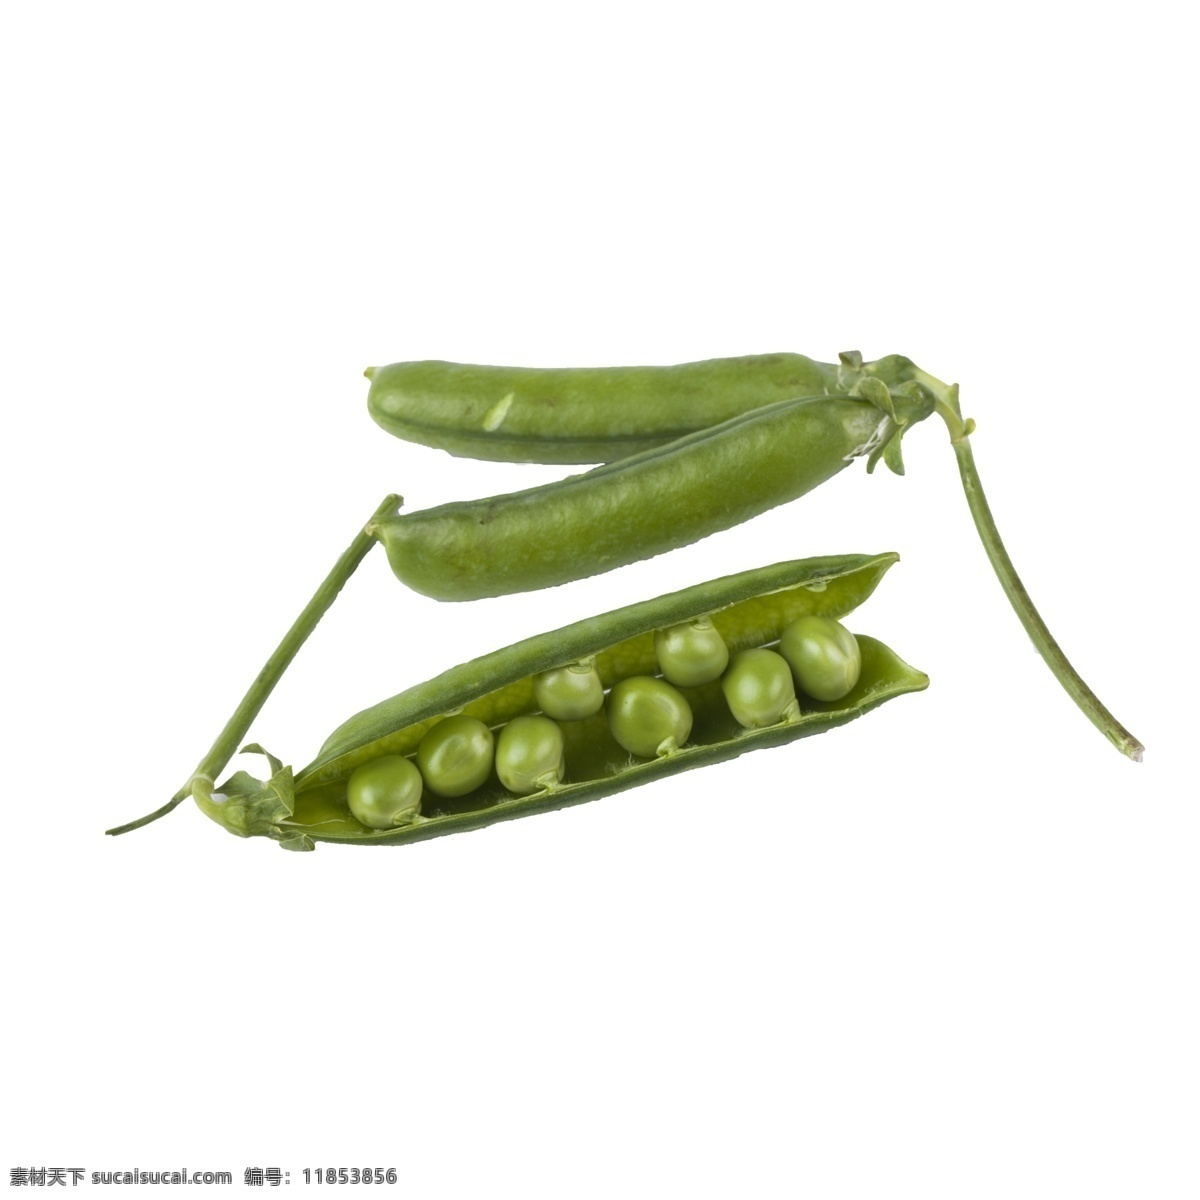 豌豆 免 抠 绿色蔬菜 豆类蔬菜 豌豆免抠 有营养的蔬菜 有营养的豌豆 蔬菜 需要剥的蔬菜